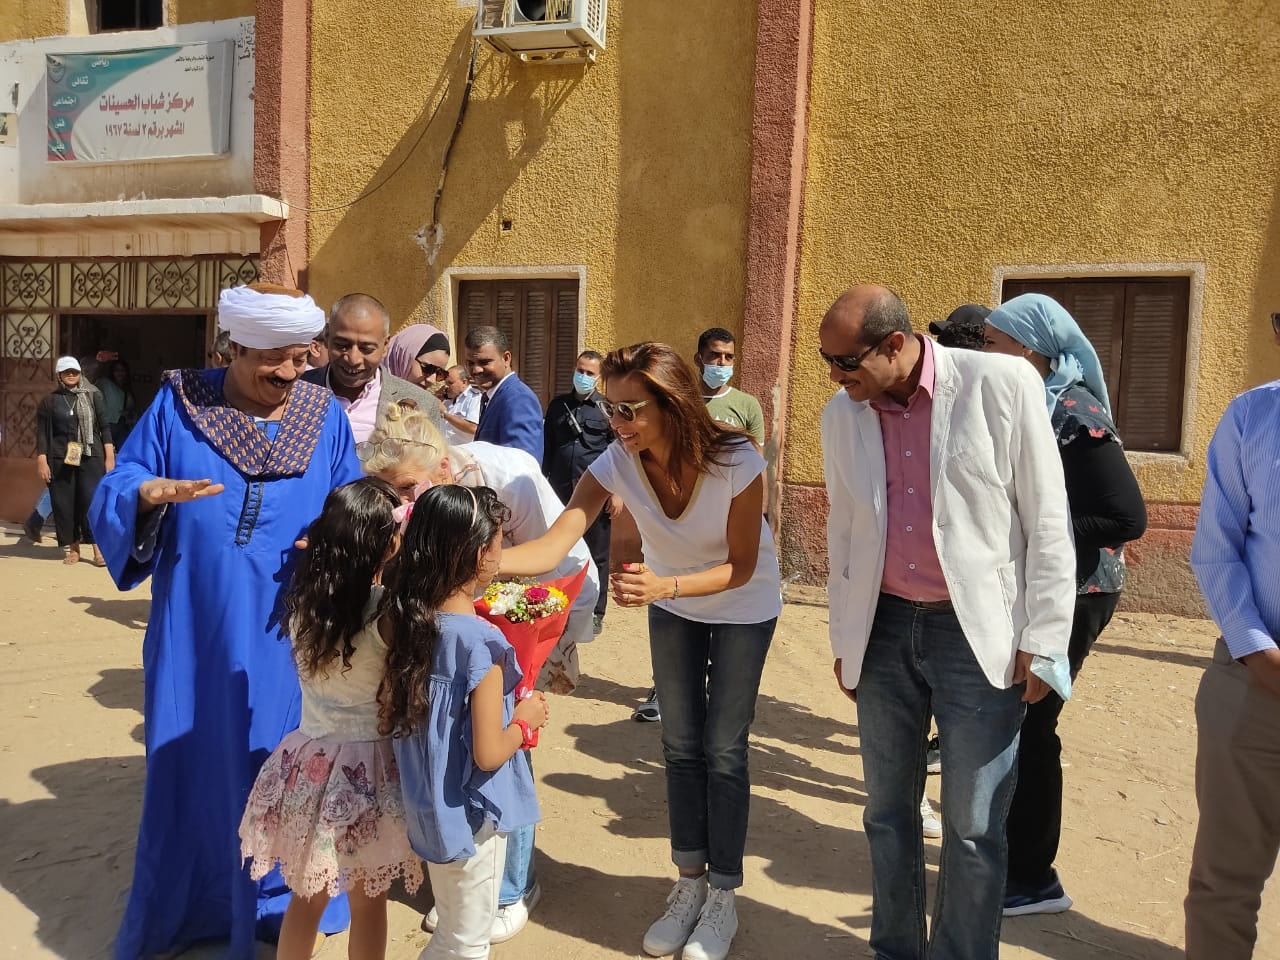 الأطفال فى إستقبال سفيرة النوايا الحسنة وممثل صندوق الأمم المتحدة في مصر